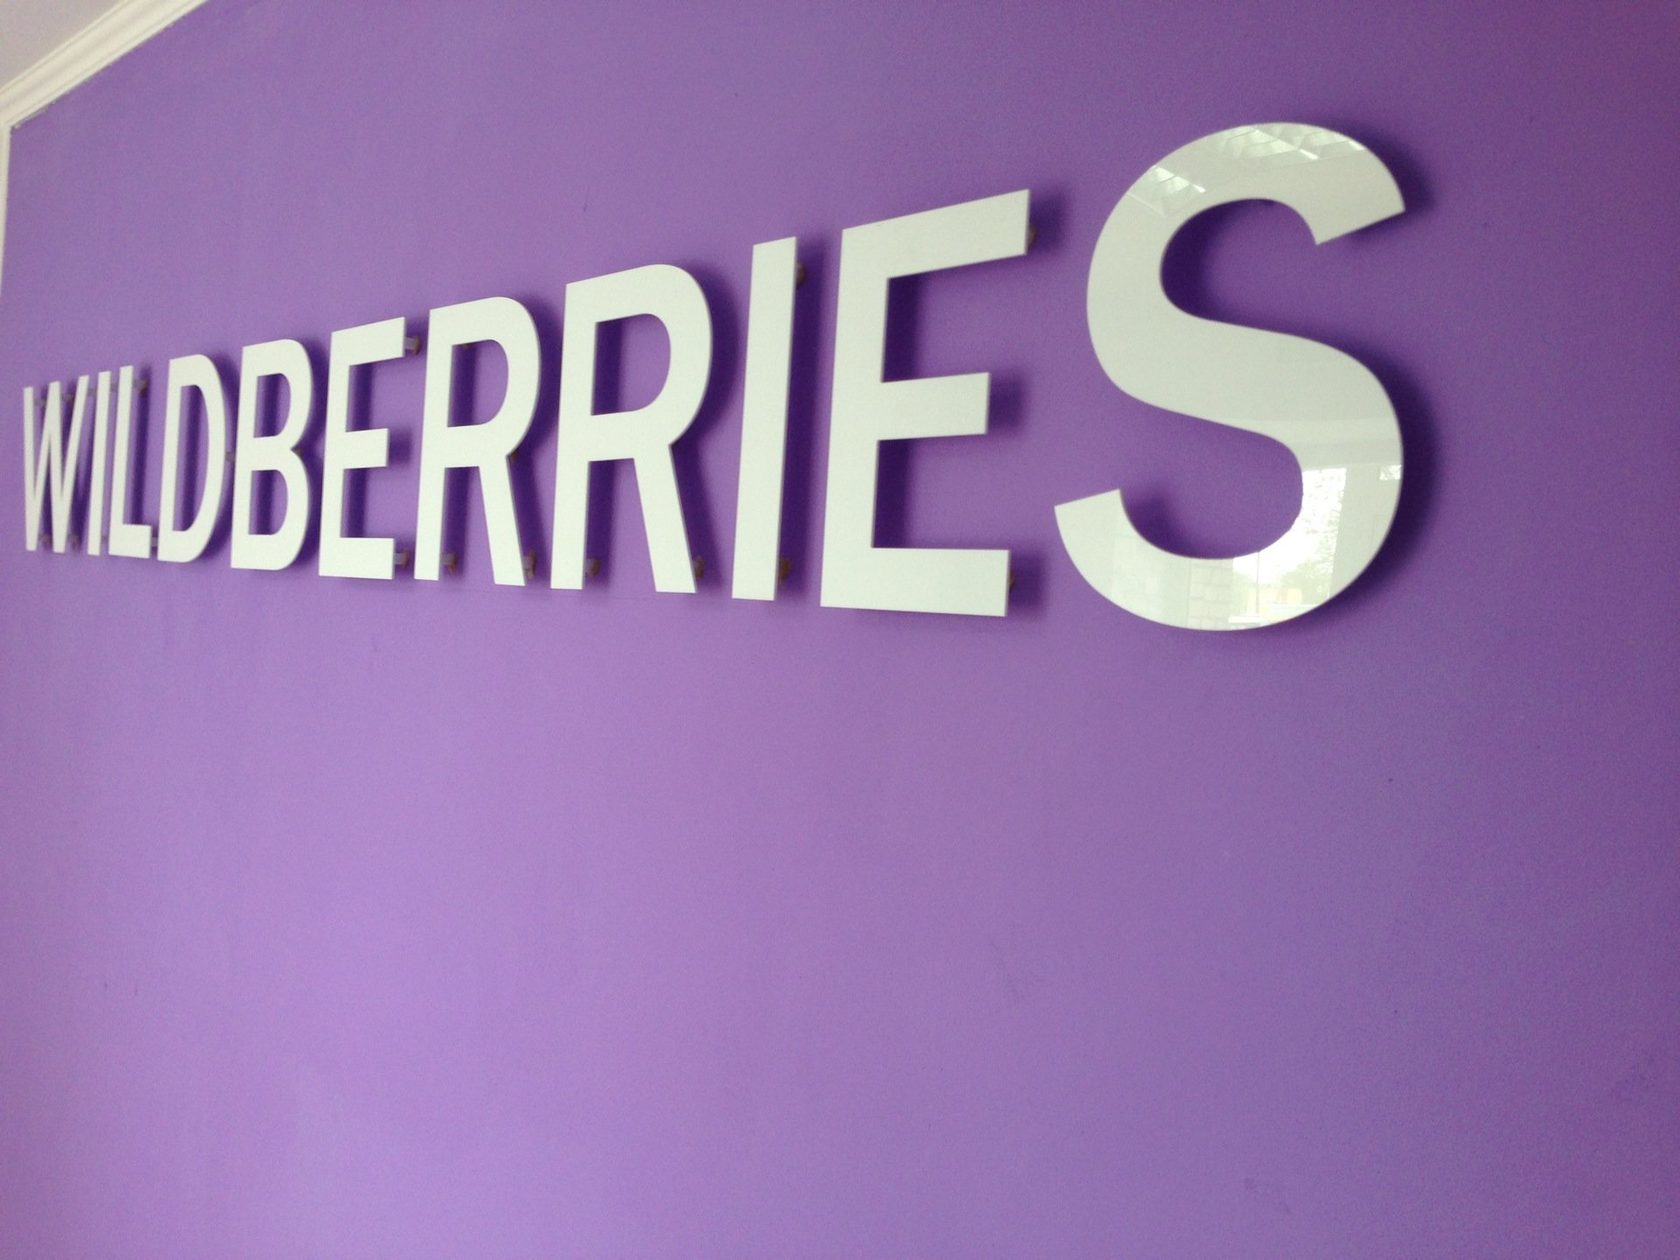 Wildberries-ը զգոնության կոչ է արել և հերքել օգտատերերի միջոցներով խարդախության մասին տեղեկությունը